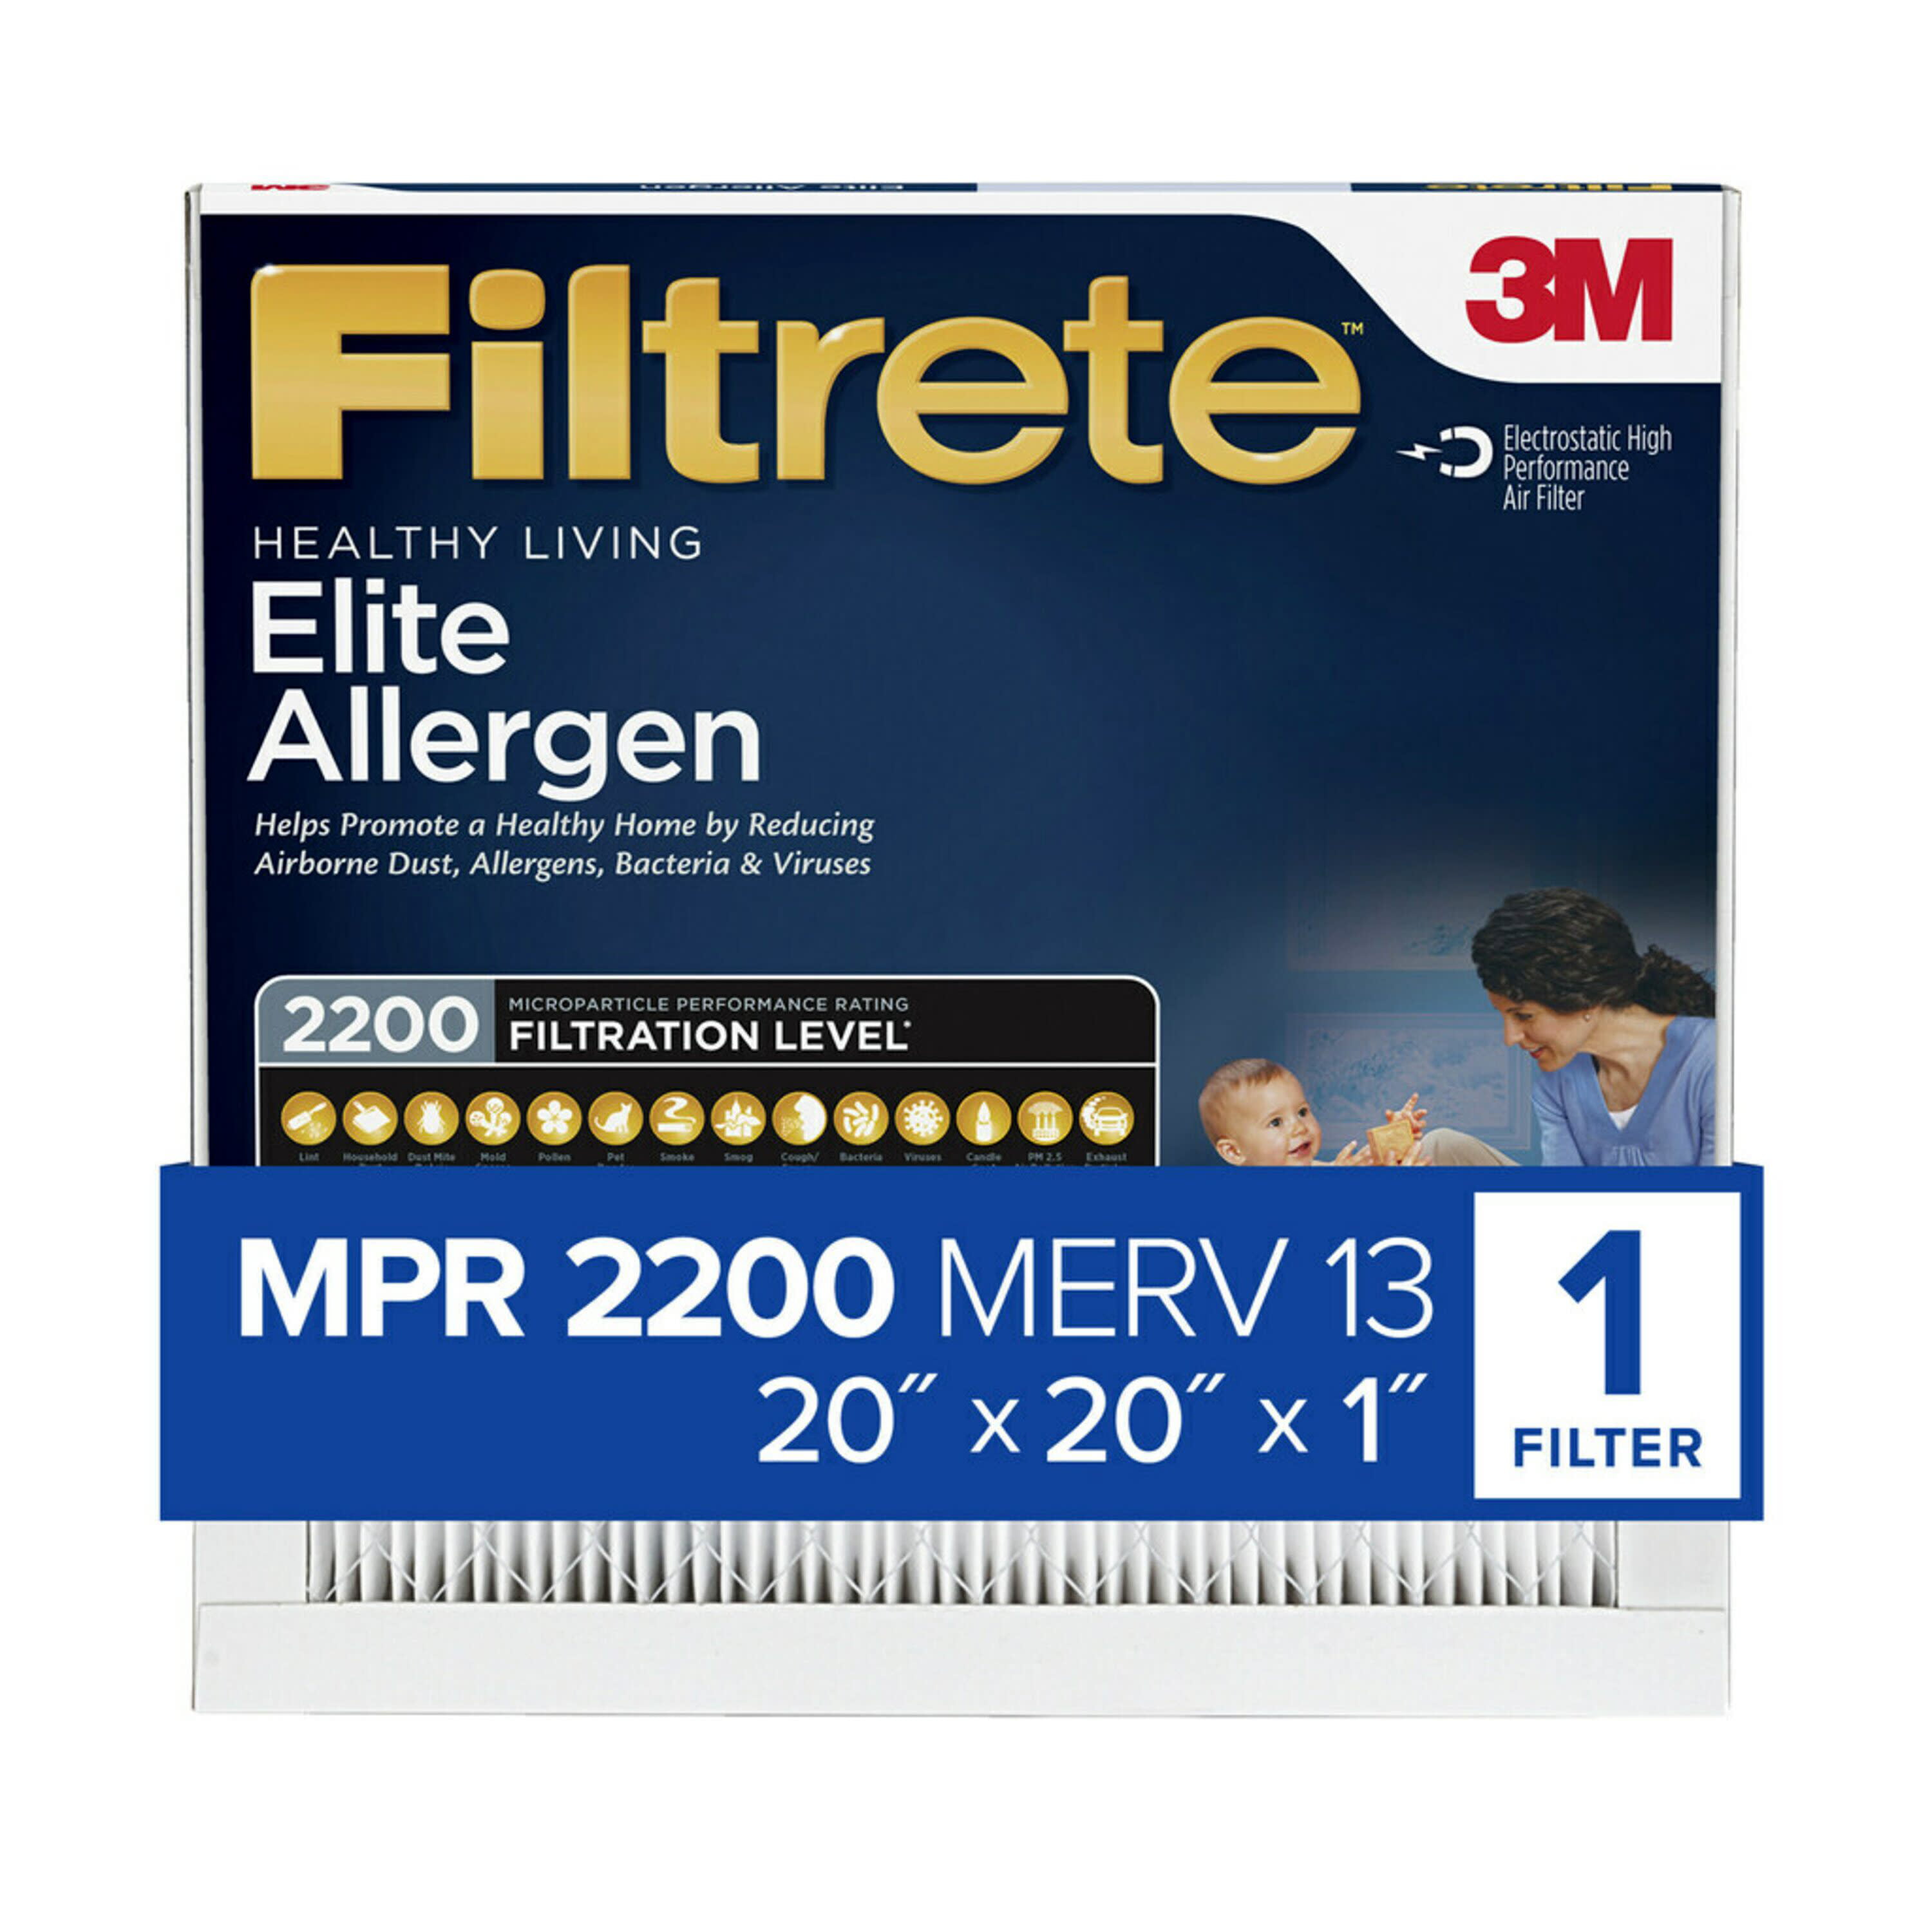 filtrete-elite-allergen-reduction-filter-20-in-x-20-in-x-1-in-mpr